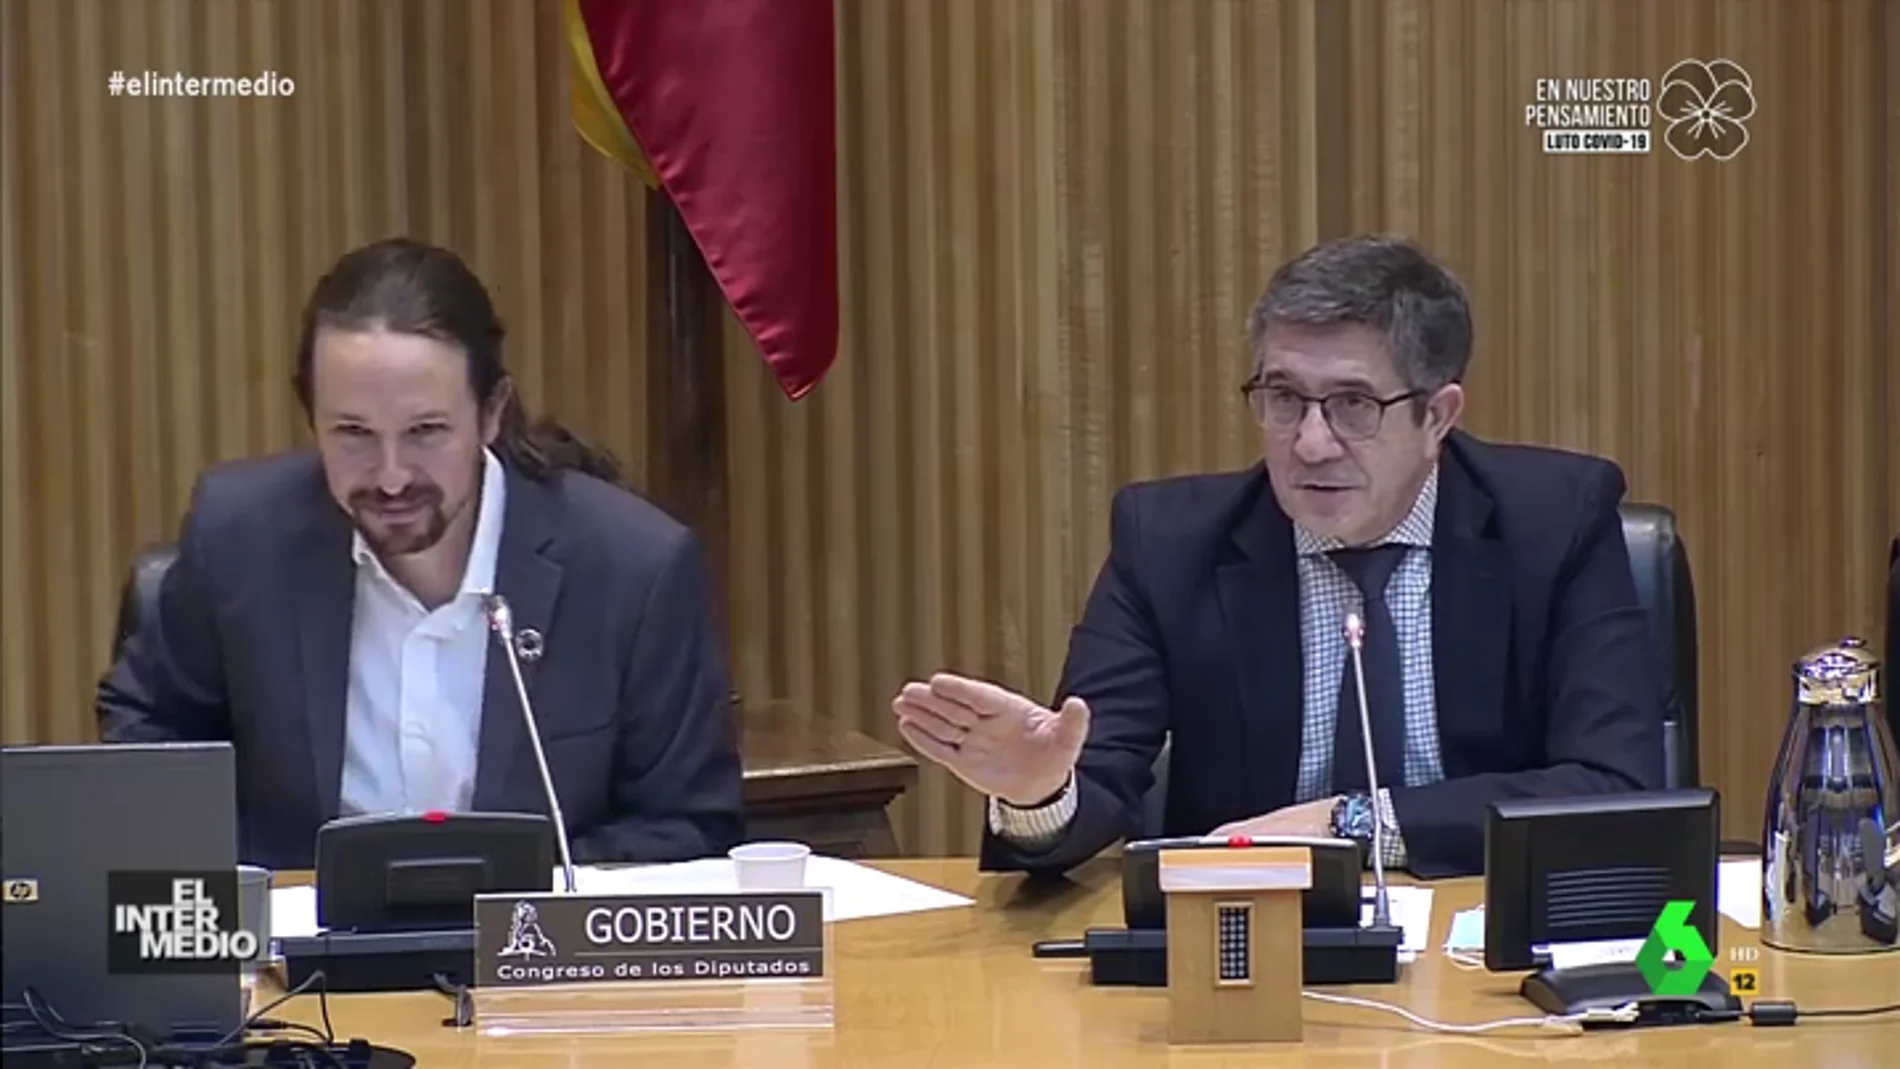 La verdadera conversación entre Iglesias y Espinosa de los Monteros en su rifirrafe en el Congreso: "Usted sale de aquí afeitado"